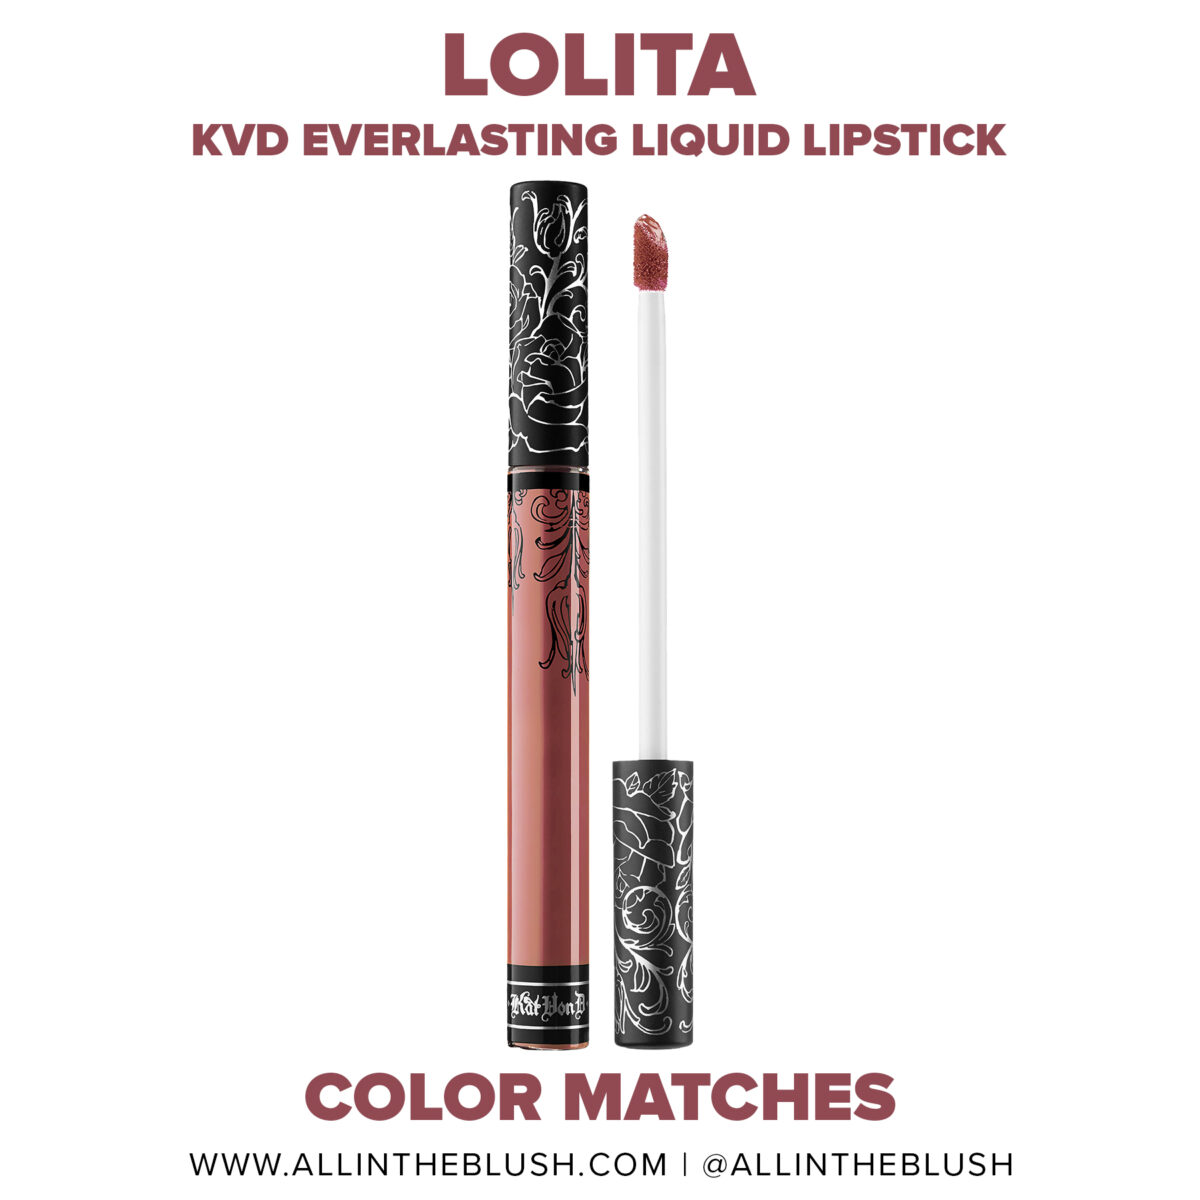 Kat Von D Lolita Everlasting Liquid Lipstick Dupes